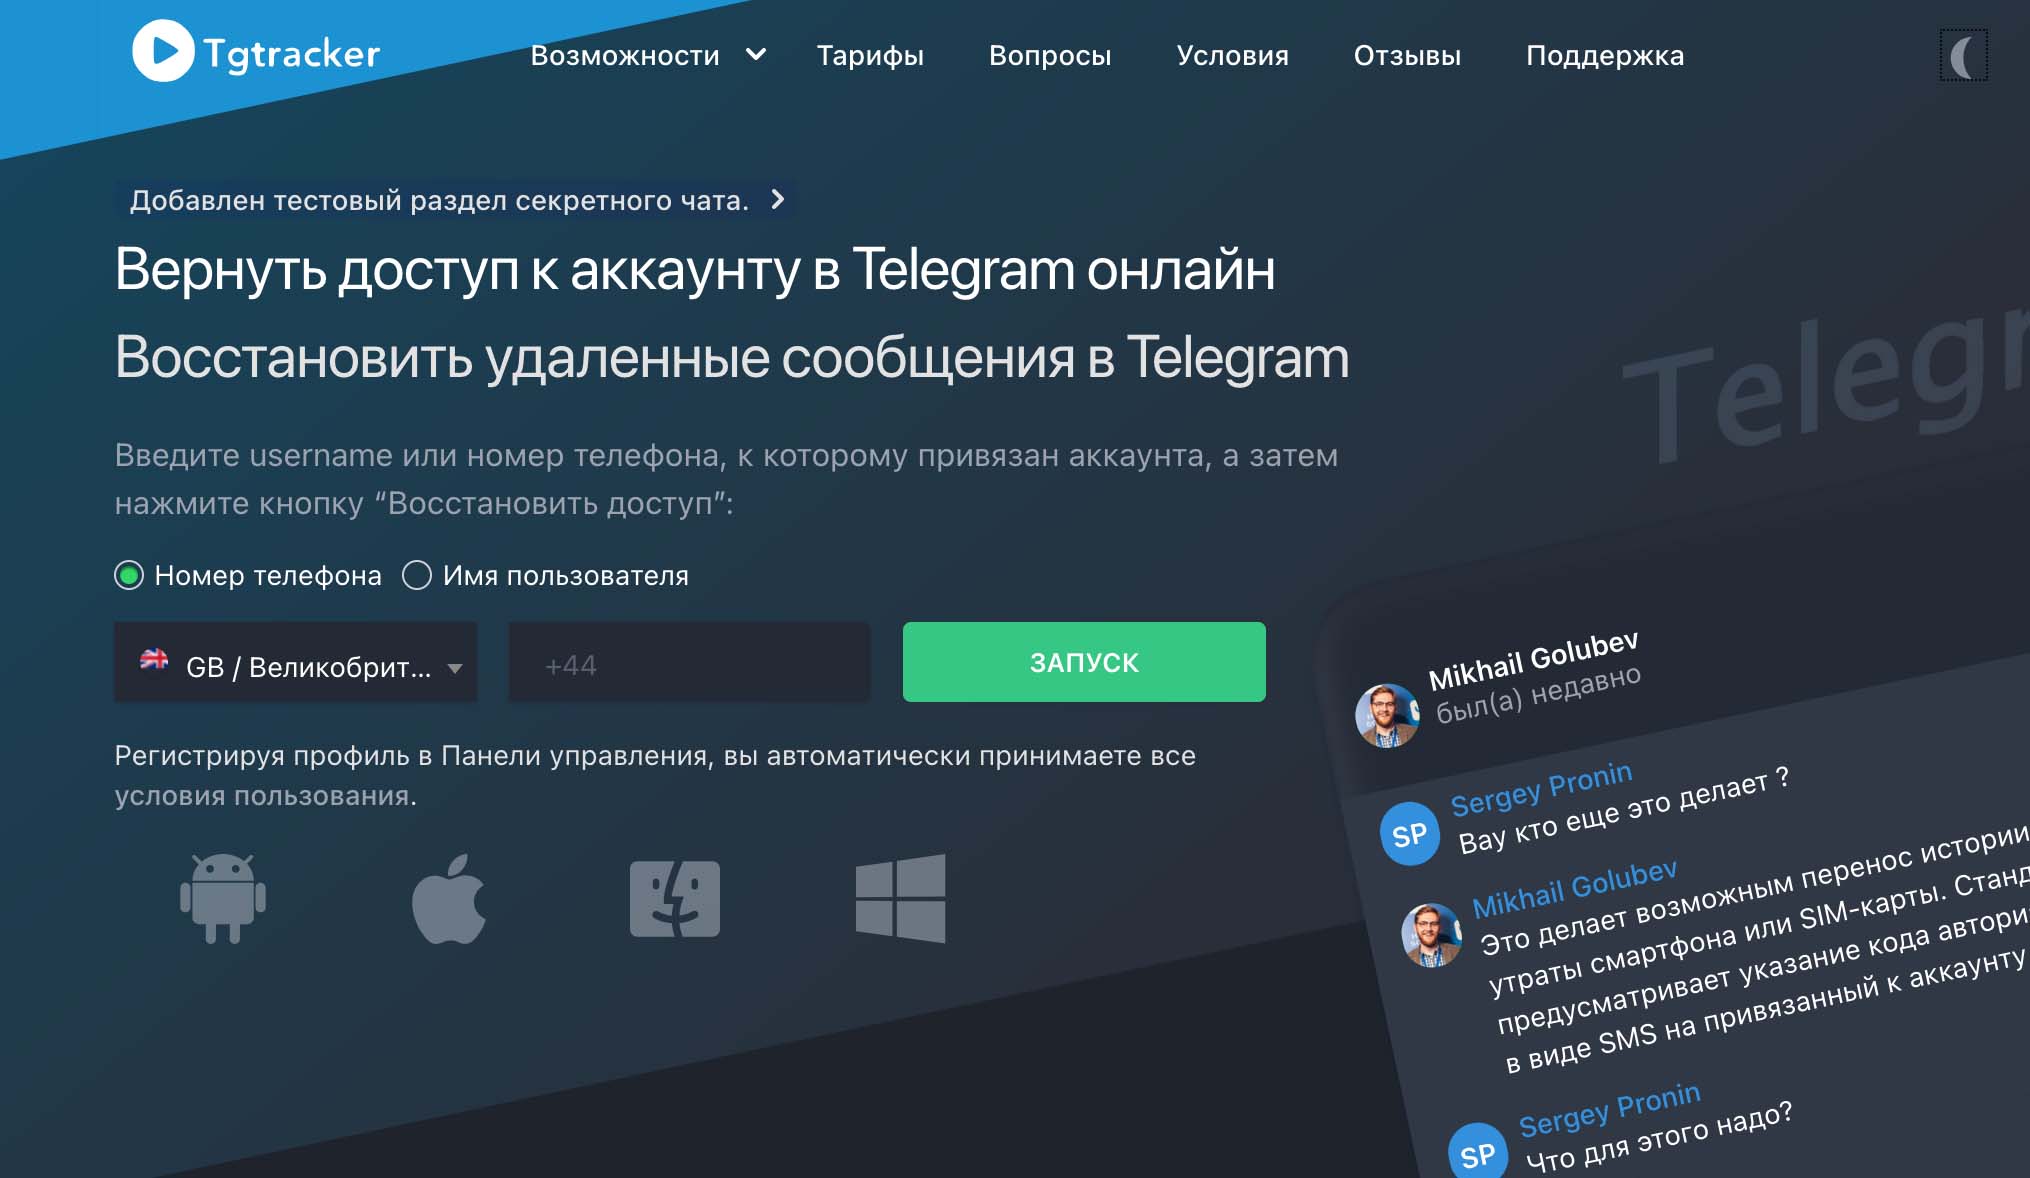 如何使用 Tgtracker 跟踪用户的 Telegram 活动